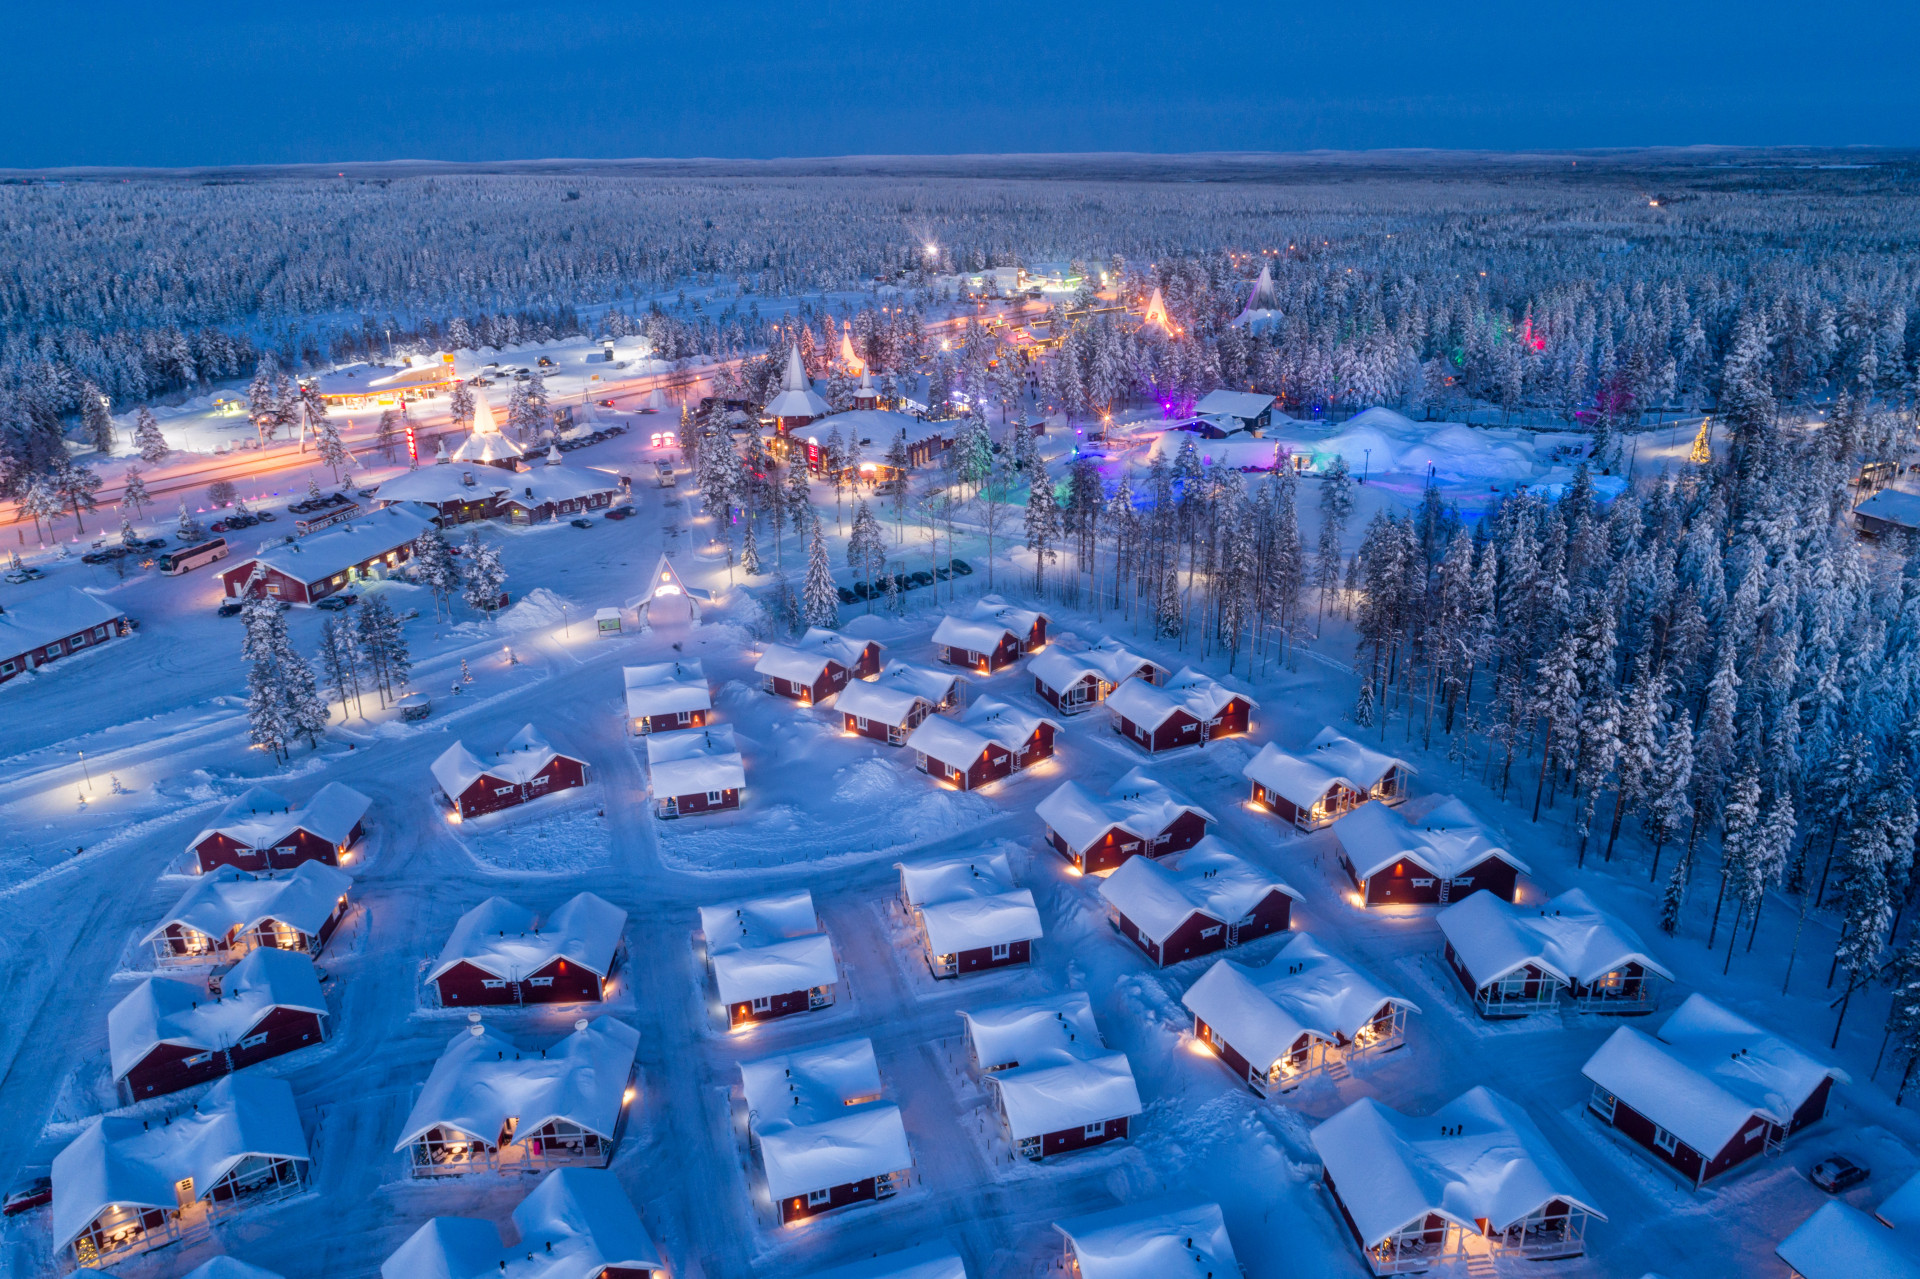 <p>La Laponie, la région la plus septentrionale de Finlande, est un endroit reculé à découvrir à n’importe quel moment de l’année. Mais imaginez cet endroit en hiver. C'est fantastique ! C’est la demeure traditionnelle du père <a href="https://www.starsinsider.com/fr/cuisine/488062/les-repas-de-noel-traditionnels-autour-du-monde">Noël</a> et, à l’heure actuelle, son village rayonne de joie et de bonne volonté, sous une couverture de neige blanche et étincelante. </p> <p>Vous avez une liste de pays où vous désirez aller ? Parcourez cette galerie, elle vous donnera envie de vous diriger vers le nord, dans un pays des merveilles hivernal aussi magique que magnifique.</p><p>Tu pourrais aussi aimer:<a href="https://www.starsinsider.com/n/196295?utm_source=msn.com&utm_medium=display&utm_campaign=referral_description&utm_content=309275v3"> Saurez-vous deviner où ces stars sont nées ?</a></p>